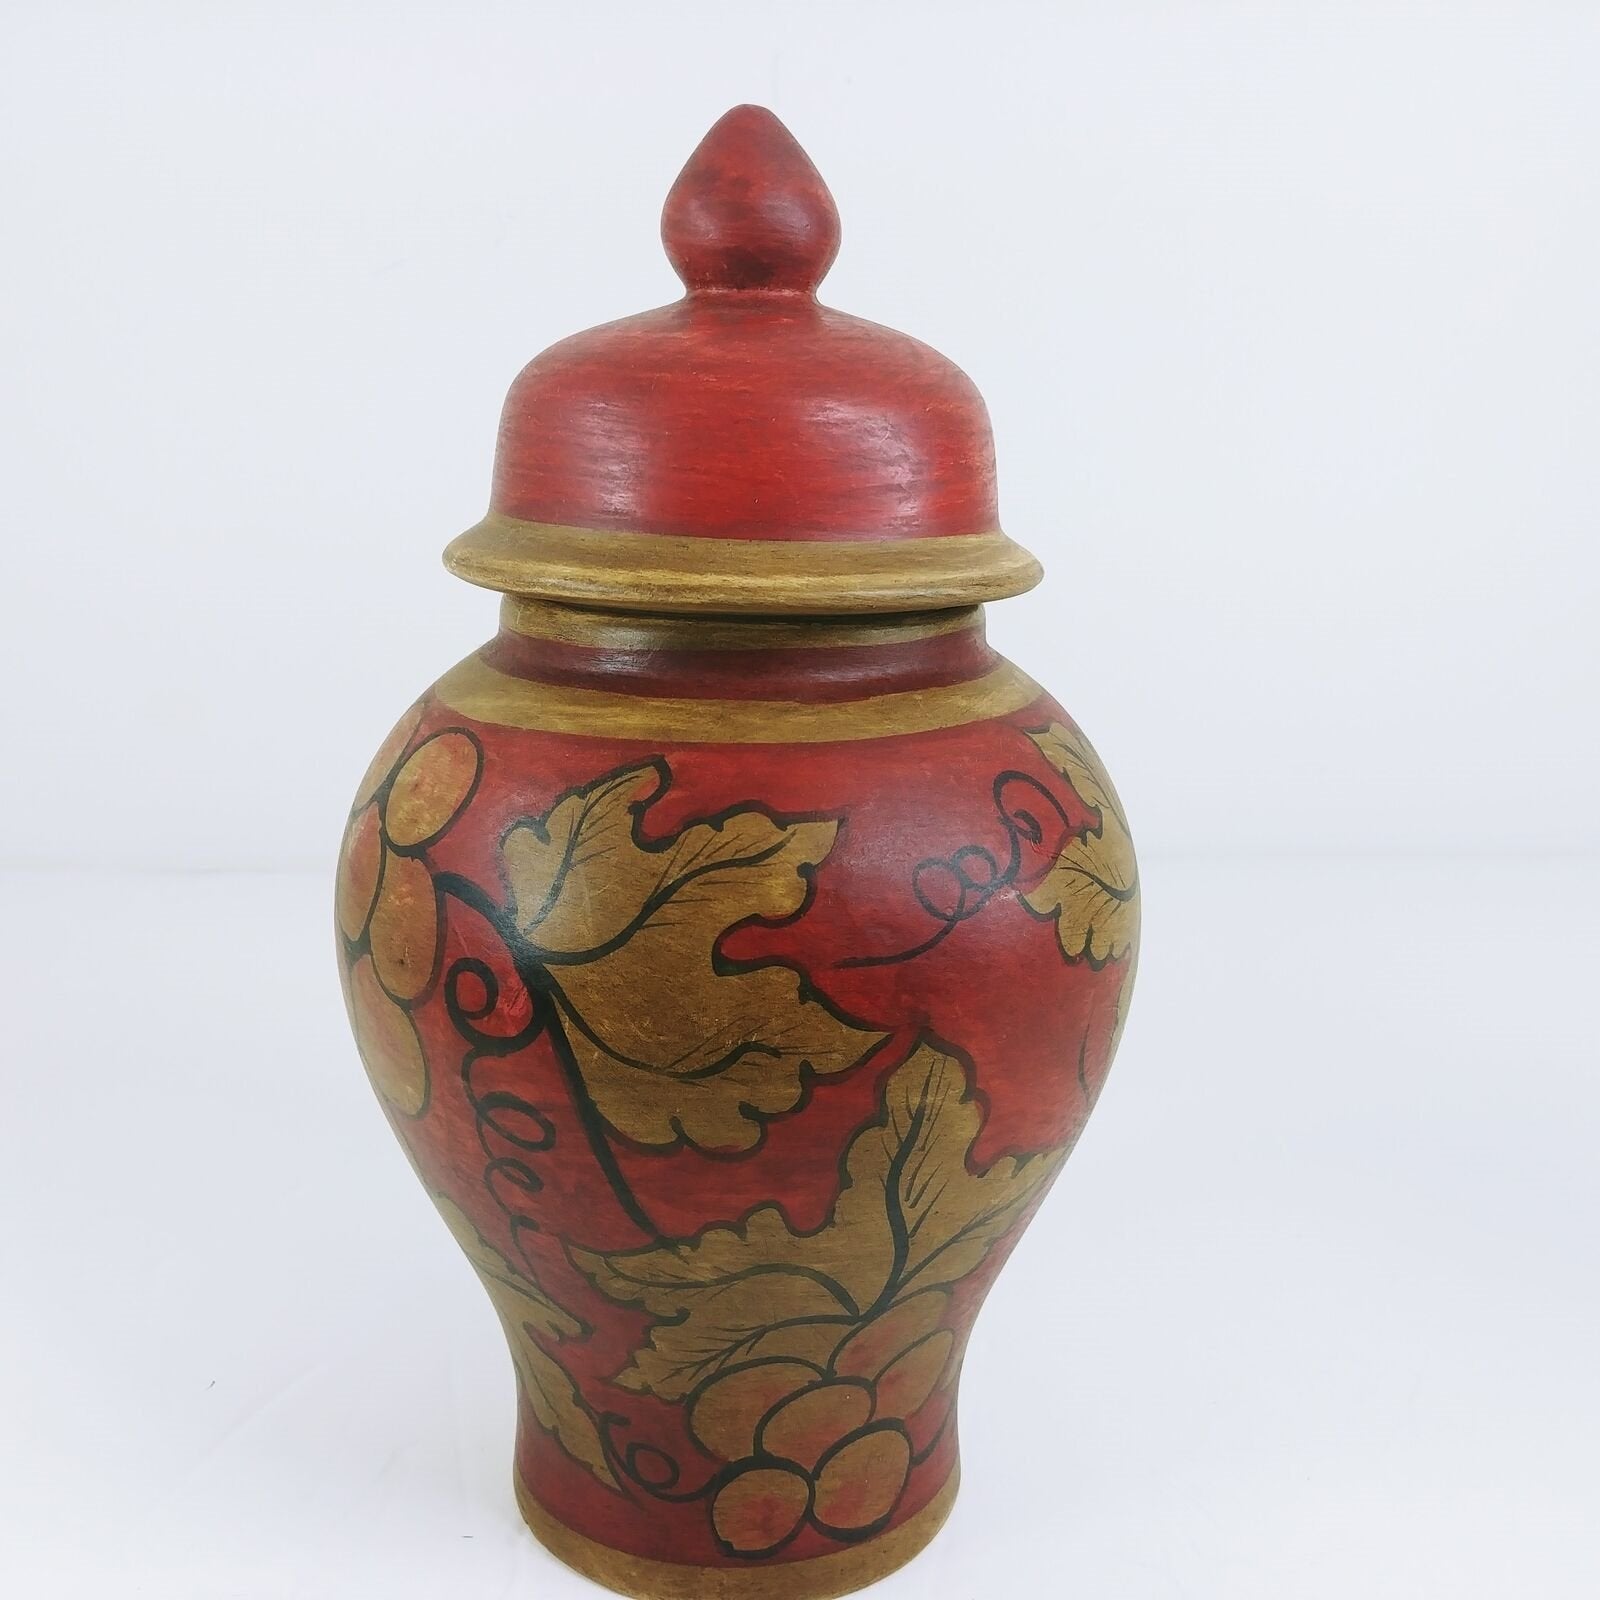 Decorative Storage Urn Canister Ginger Jar Lid Hand Painted Grapevine Design